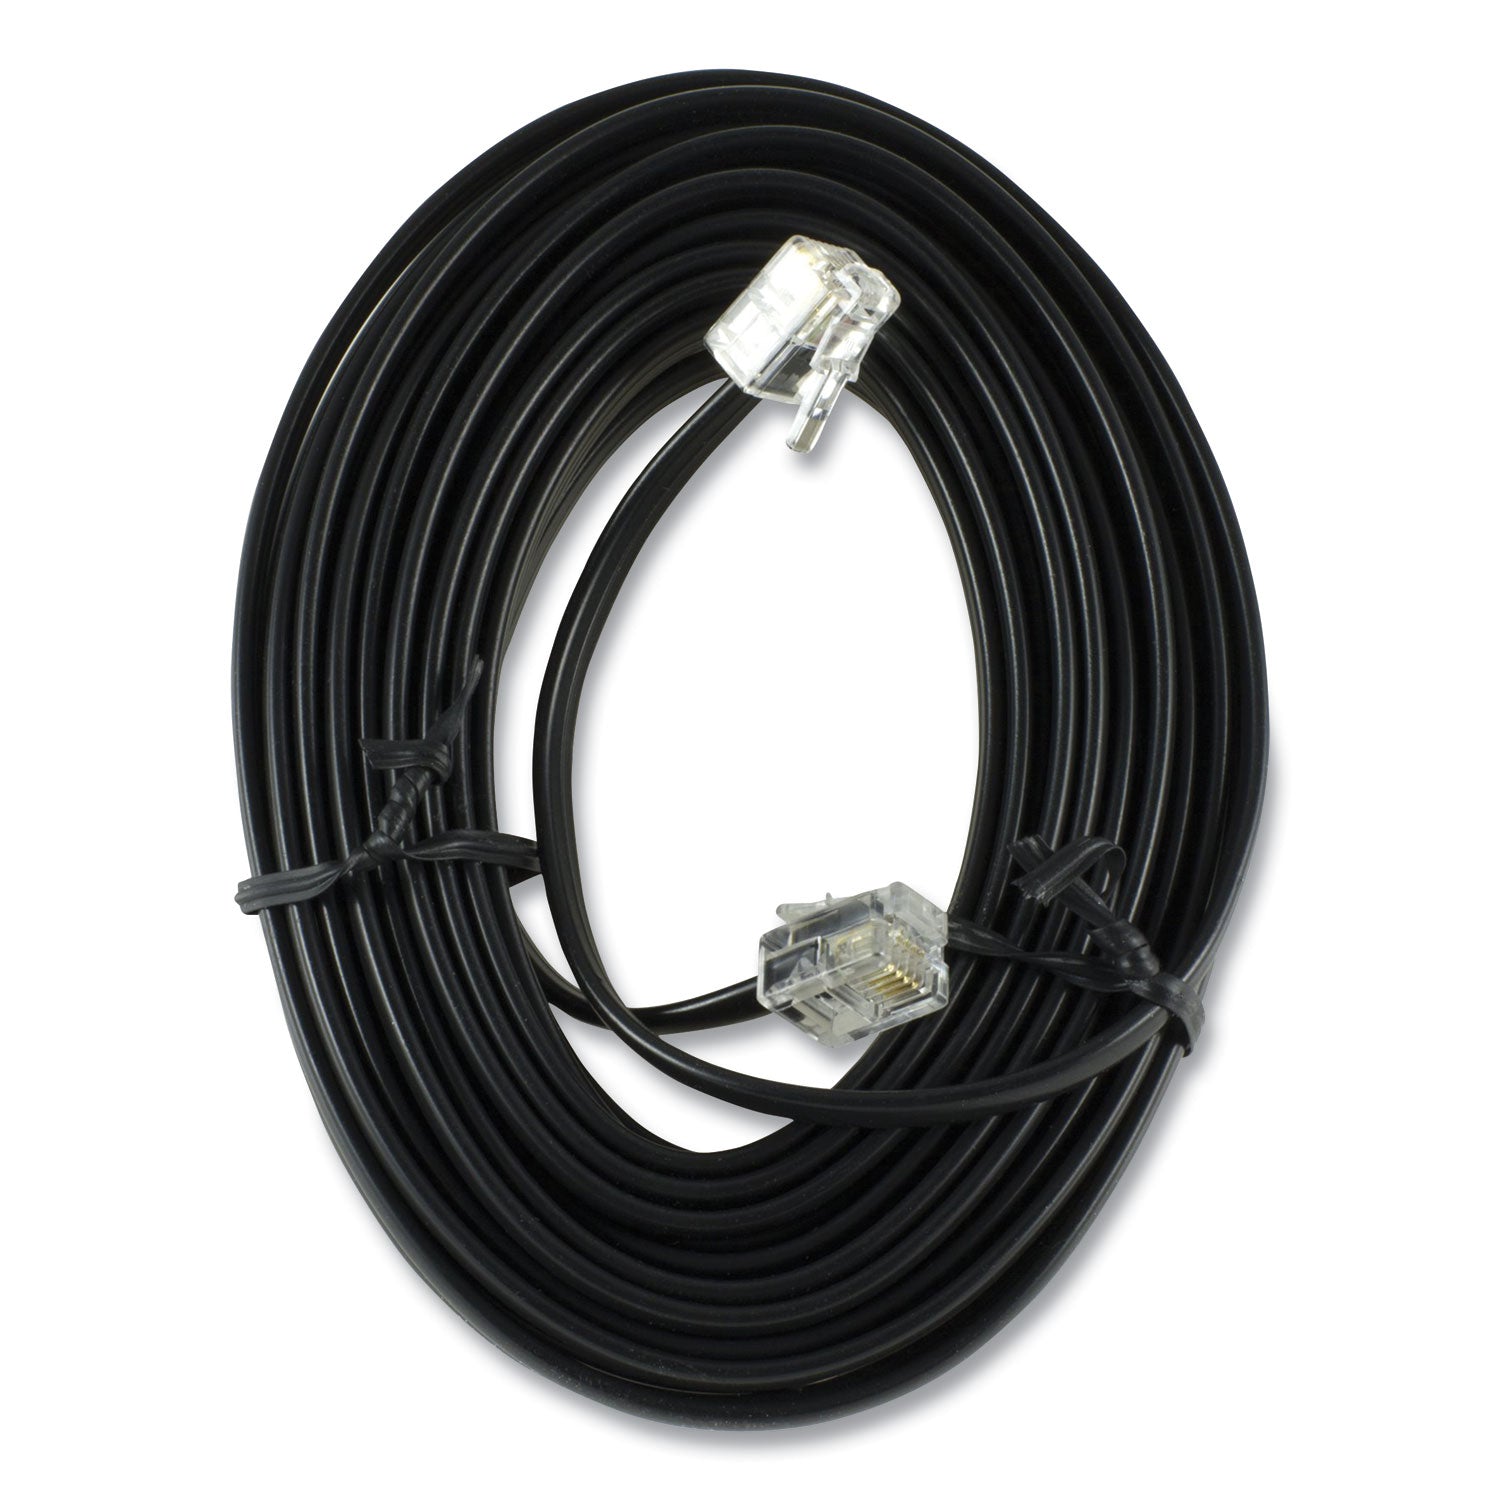 line-cord-plug-plug-25-ft-black_pwg76580999 - 1